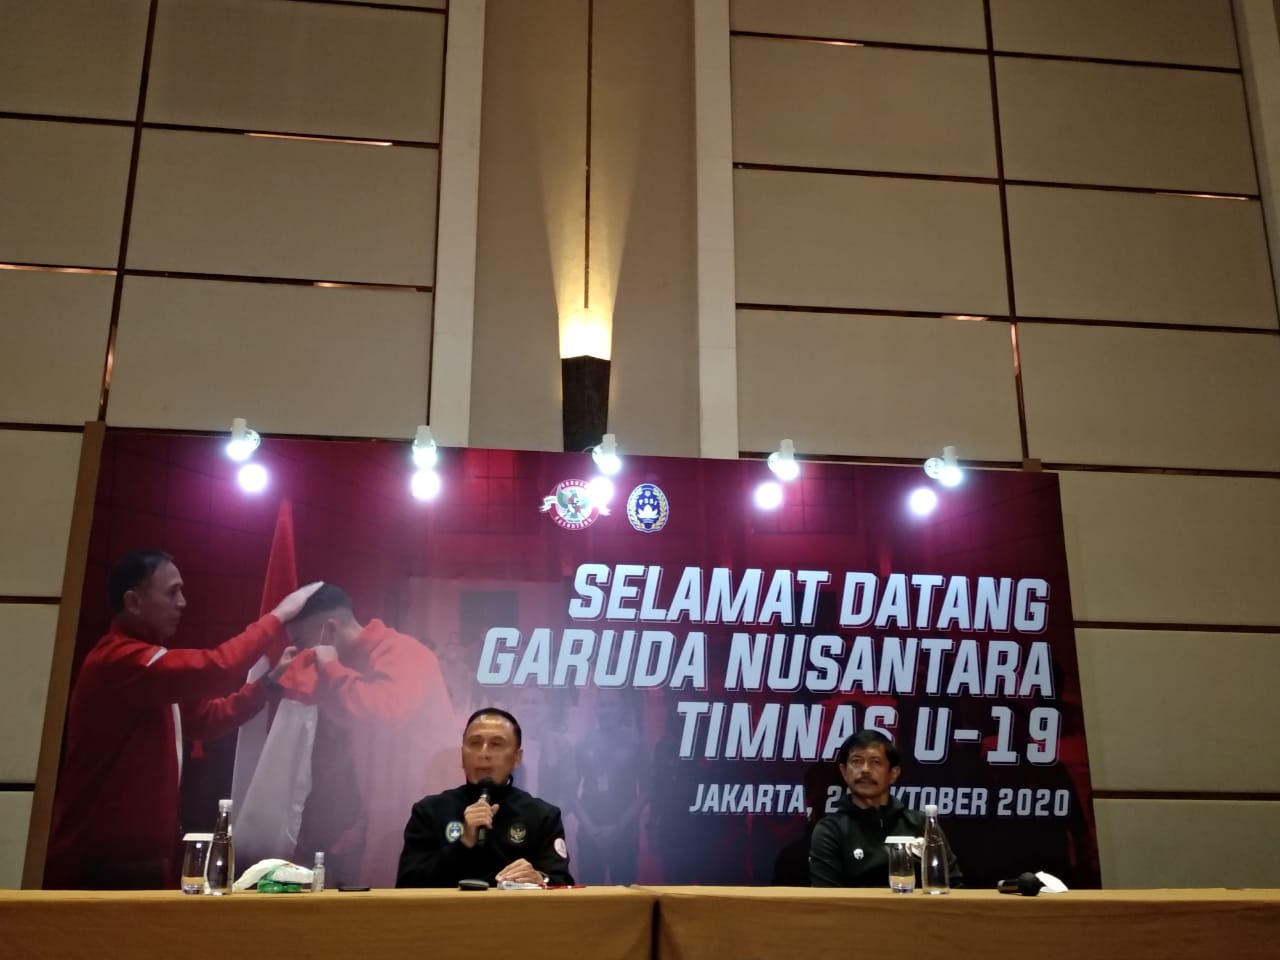 Belanda Jadi Tujuan Terdepan untuk TC Timnas U-19 Indonesia, Ini Alasannya